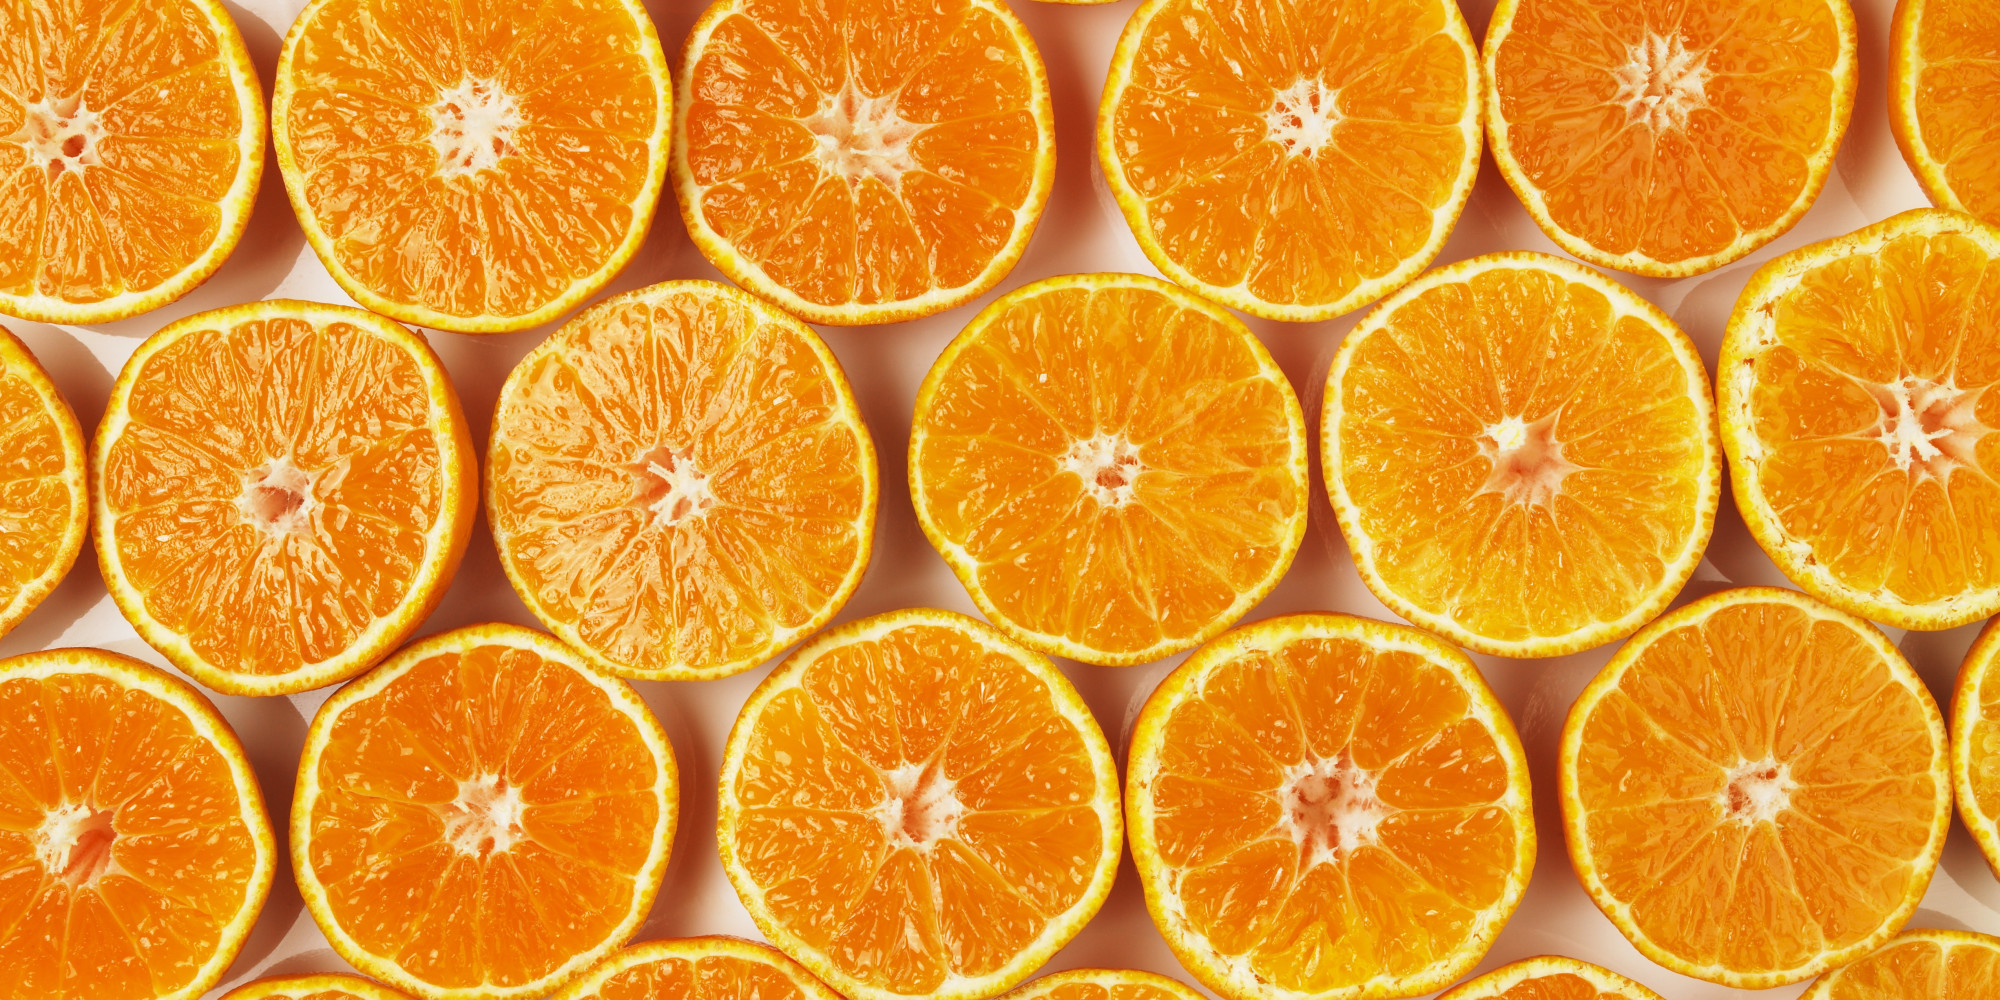 Attēlu rezultāti vaicājumam “orange”